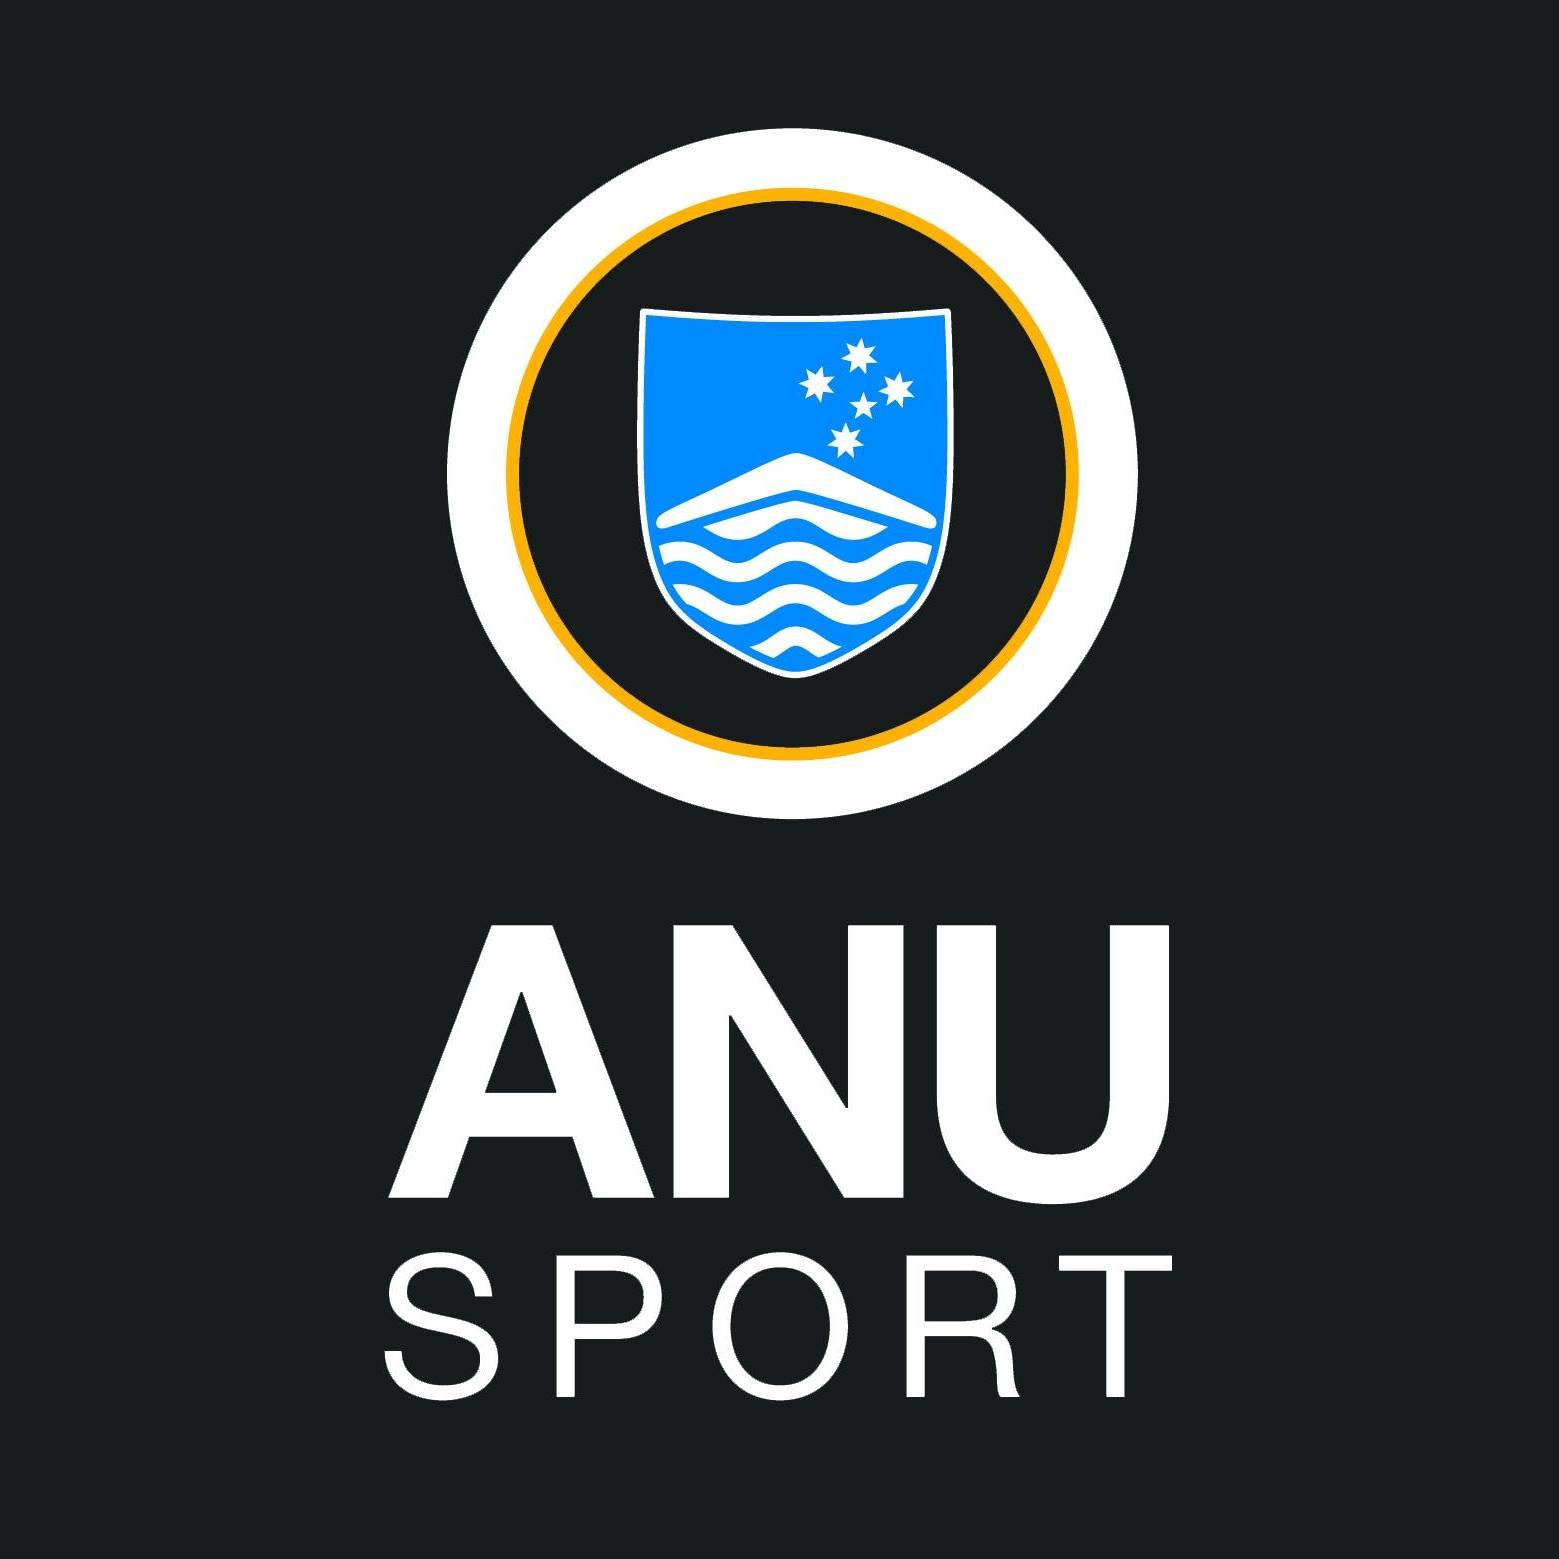 Anu Sport And Recreation Association Inc.